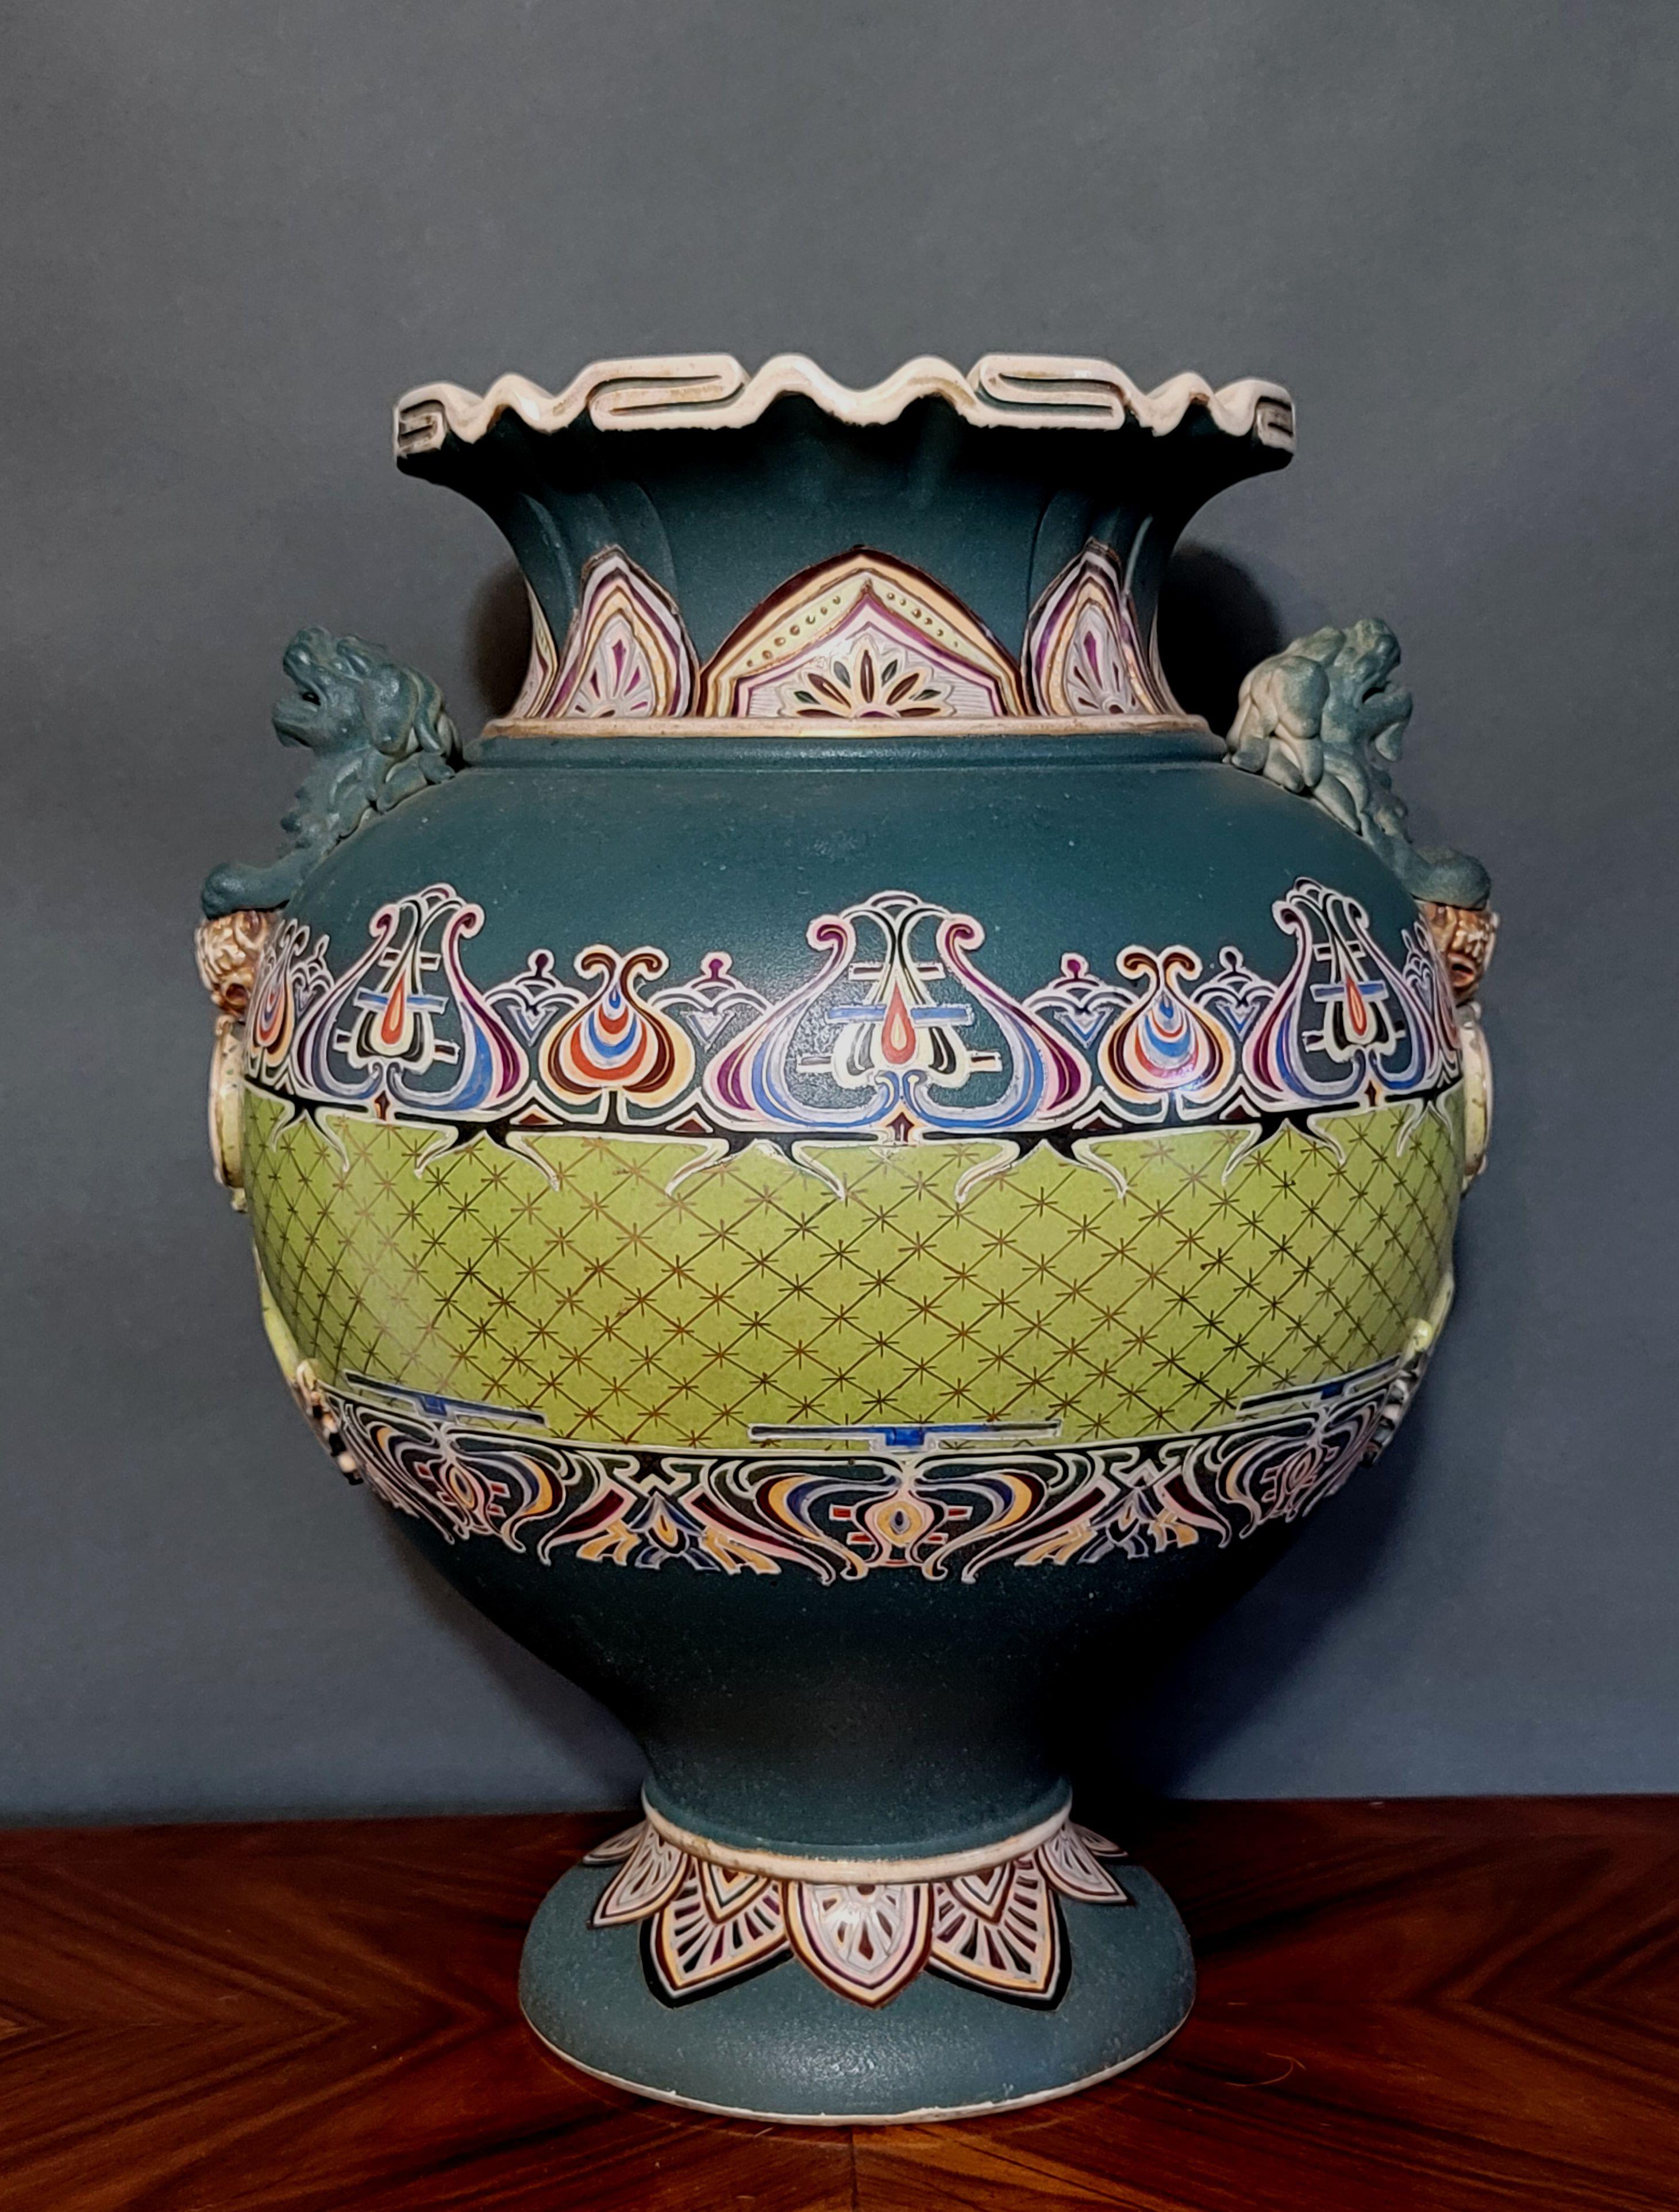 Japon, 20e siècle
Un véritable vase peint à la main avec une attention extrême et une énergie de conception dans la création de motifs et de lignes dorées tout autour du grand vase. Il s'agit d'un objet très représentatif de la période de l'Art